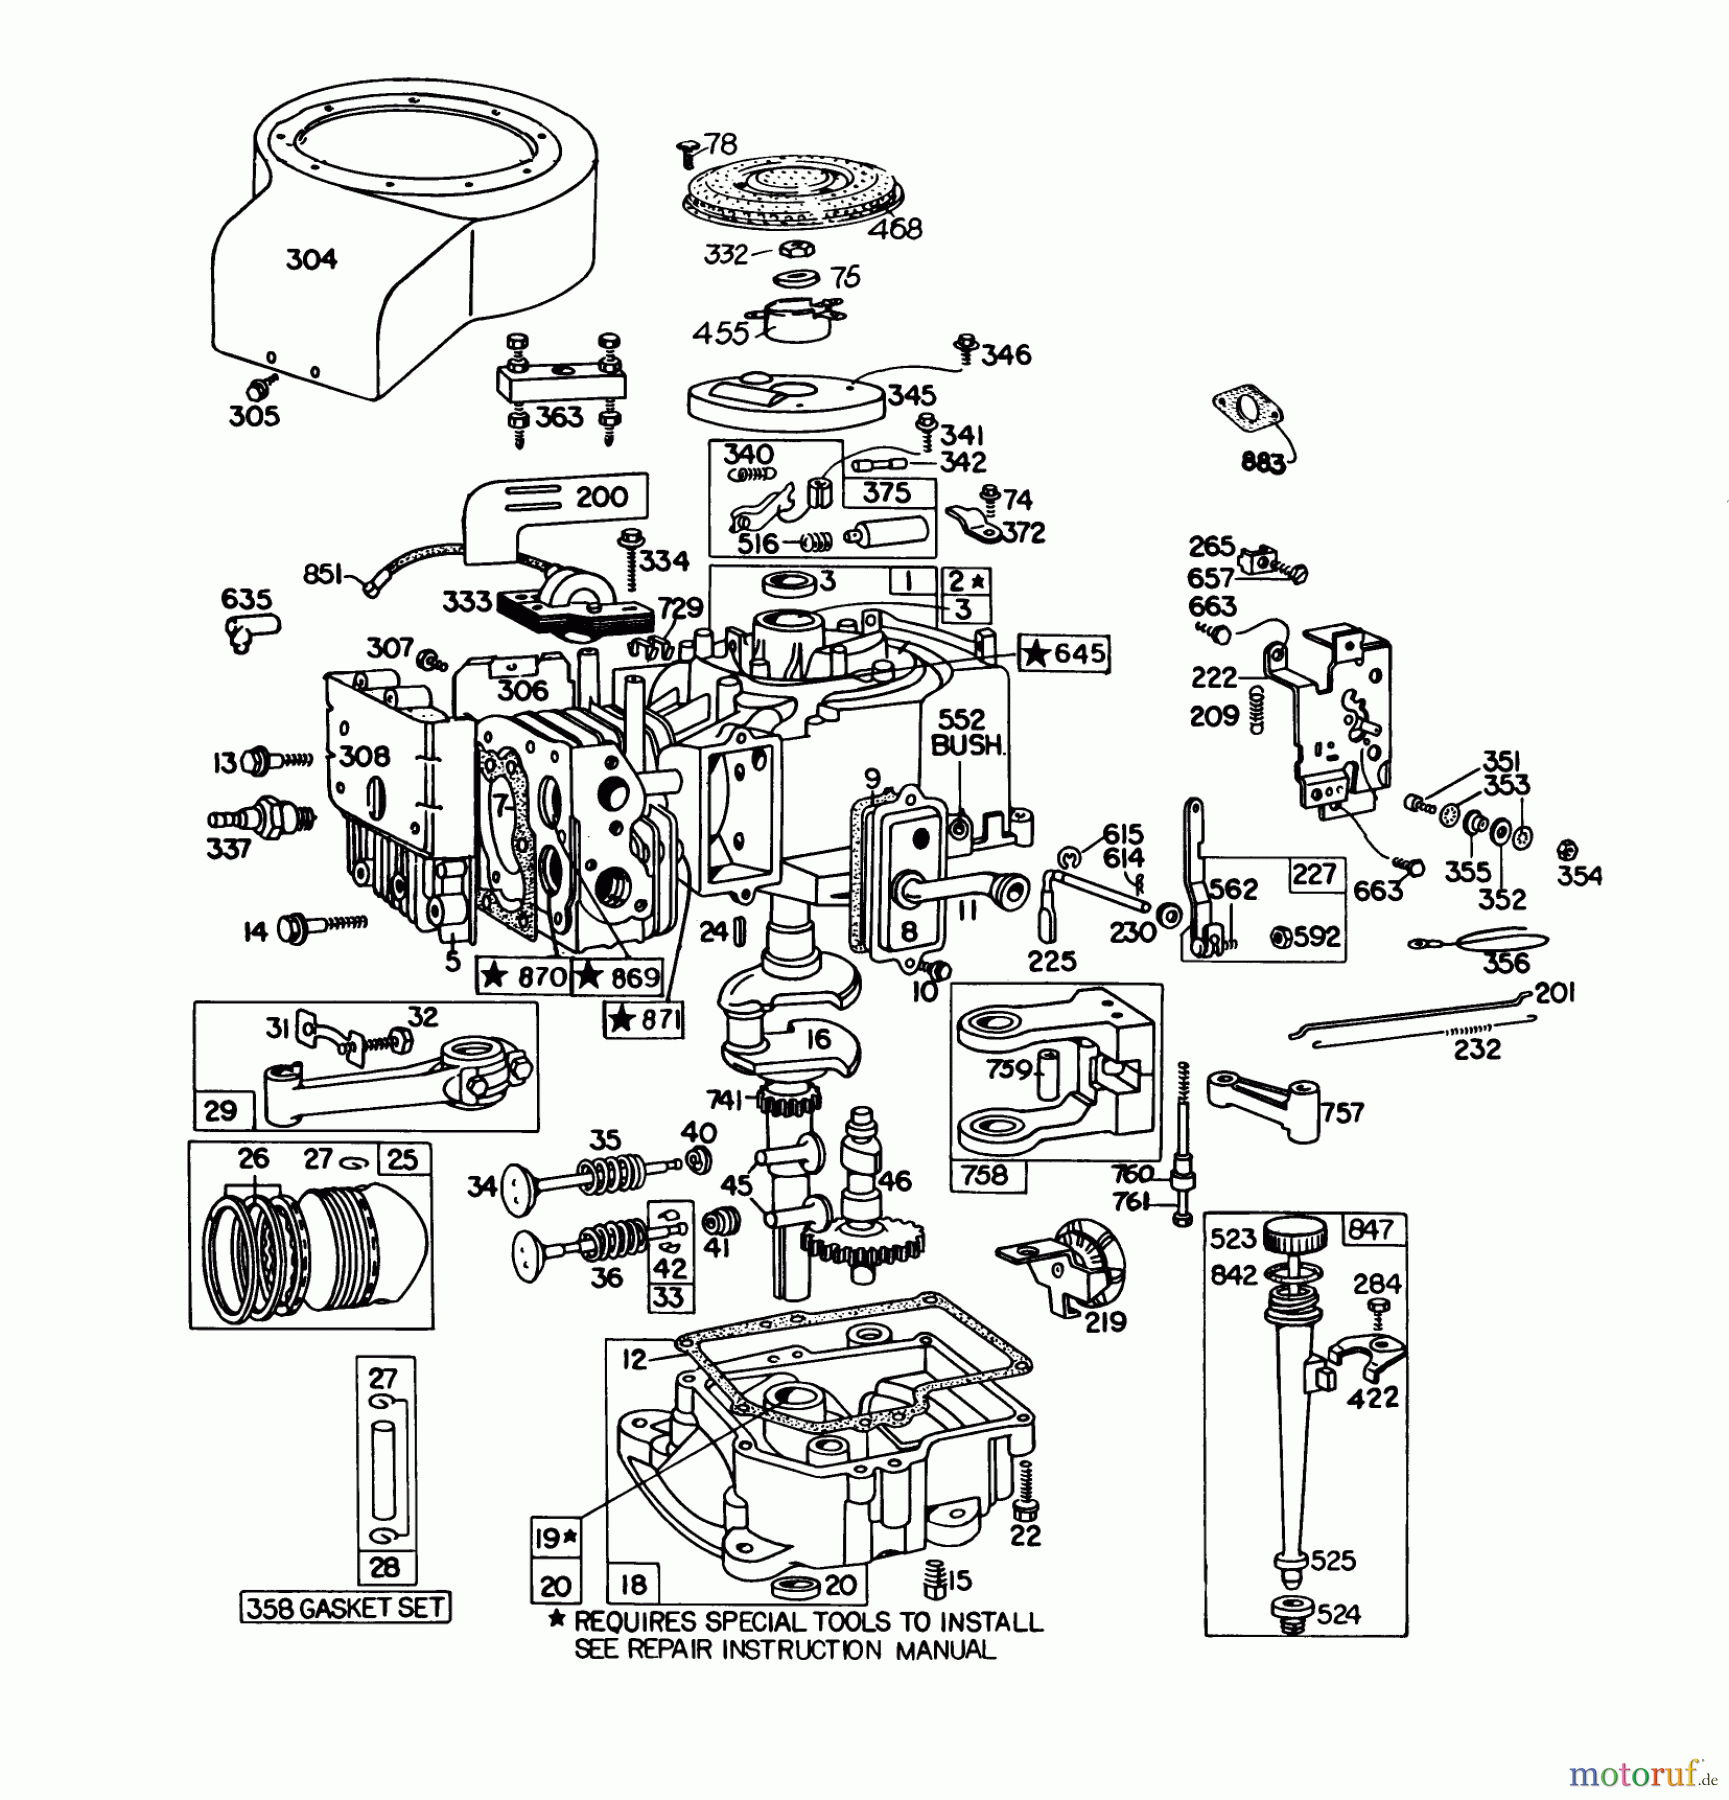  Toro Neu Mowers, Lawn & Garden Tractor Seite 1 57300 (8-32) - Toro 8-32 Front Engine Rider, 1980 (0000001-0999999) ENGINE BRIGGS & STRATTON MODEL 191707-5641-01 (MODEL 57300)